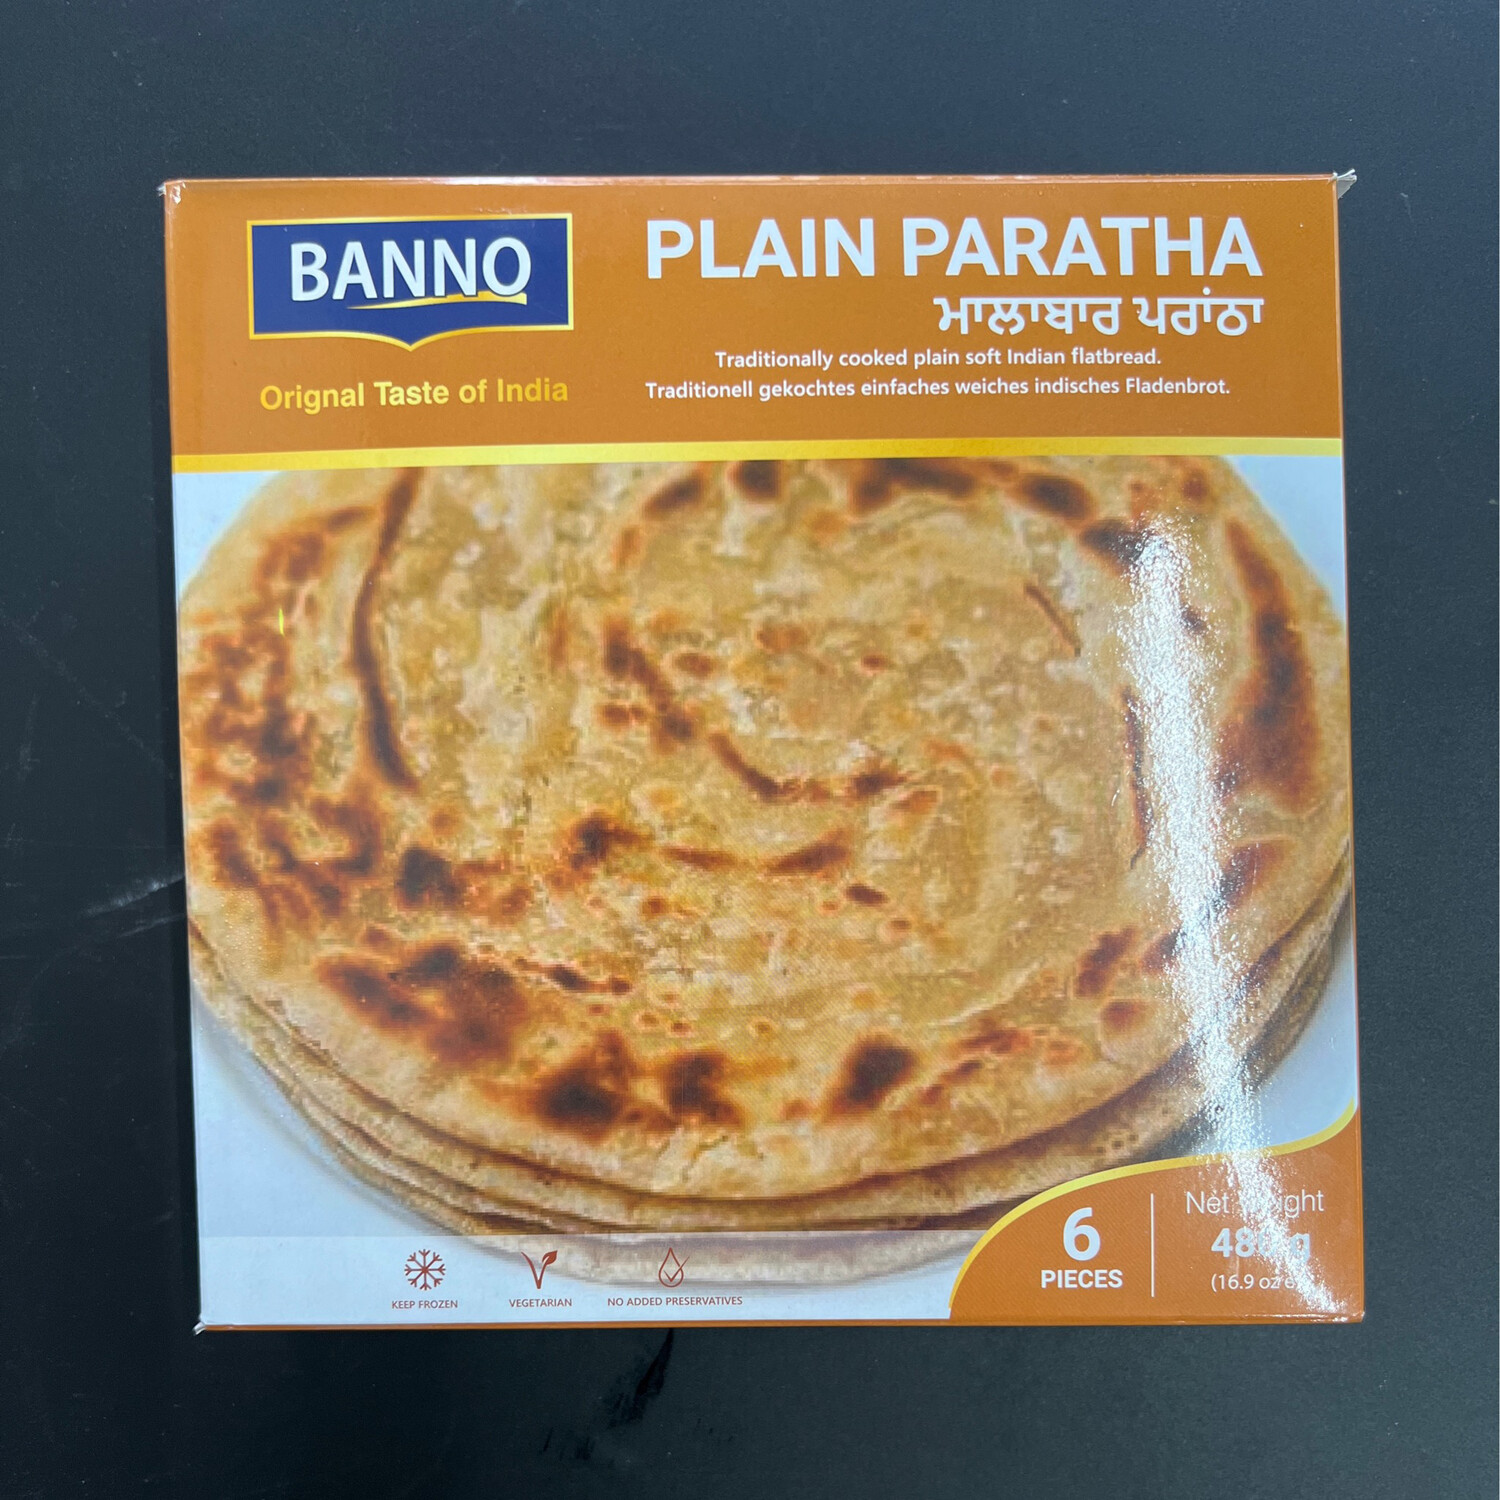 Banno Plain Paratha 6pcs 480g